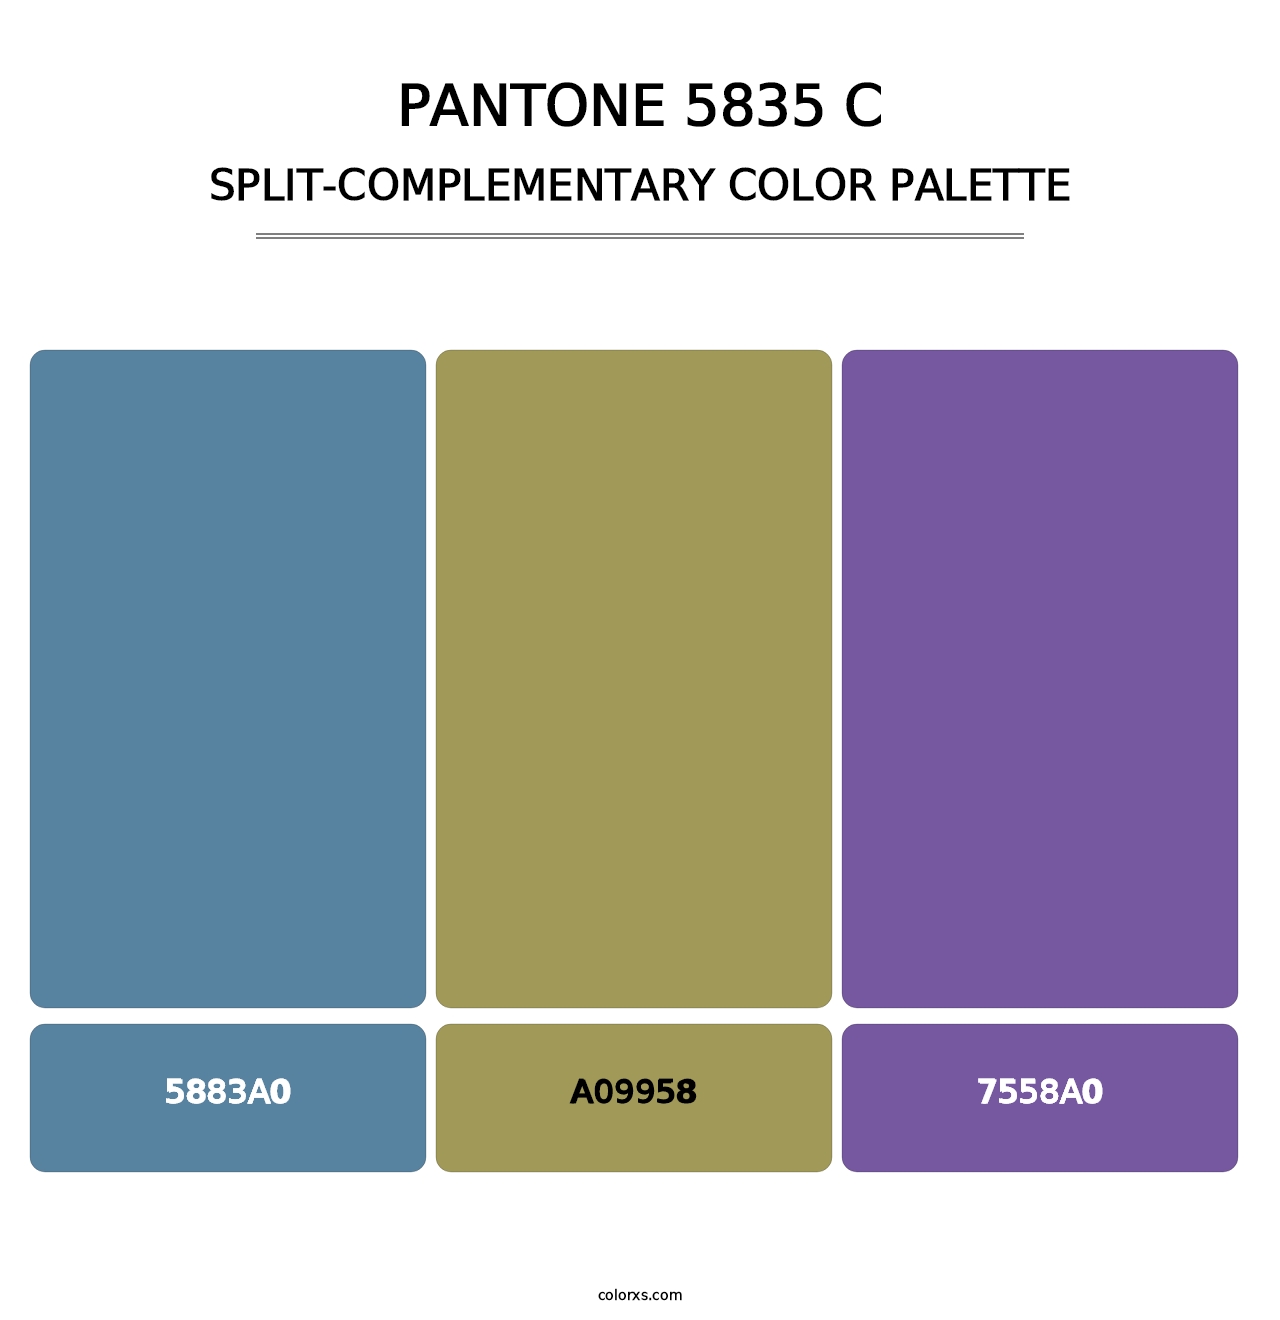 PANTONE 5835 C - Split-Complementary Color Palette